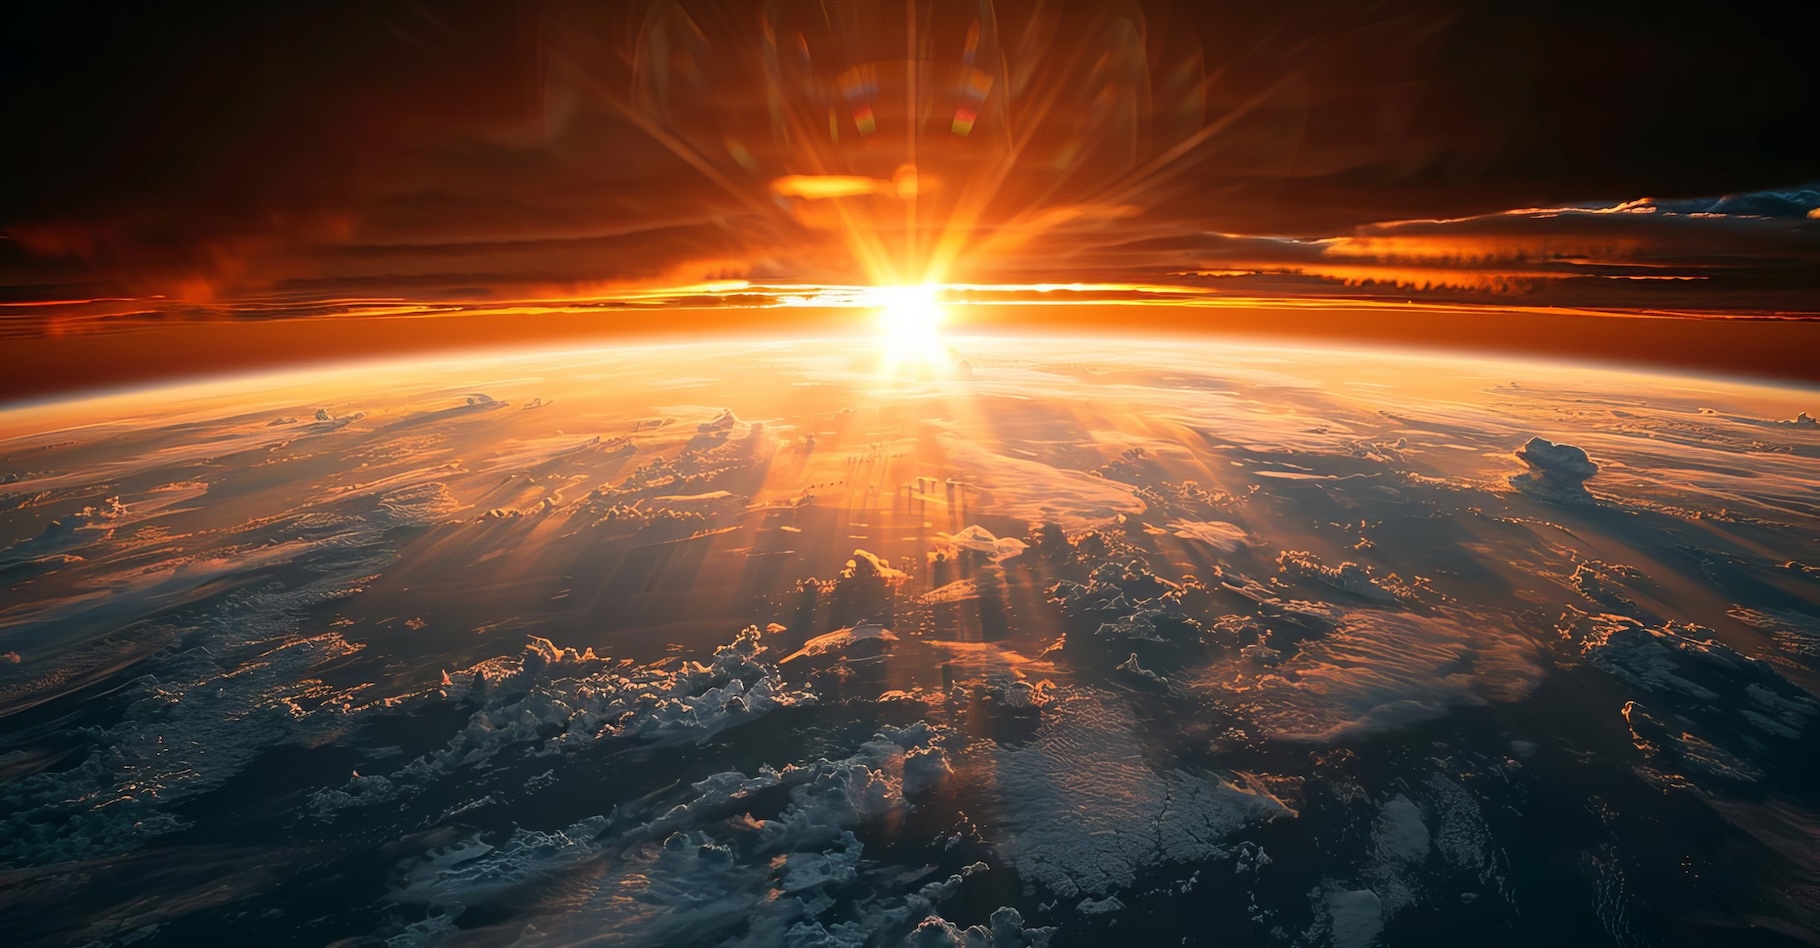 La couche d’ozone nous protège du rayonnement ultraviolet (UV). Mais des chercheurs de l’université Charles-Sturt (Australie) avancent qu’elle peut être détruite par des particules en provenance de notre Soleil. Avec quels effets sur la vie ? © Pairat, Adobe Stock